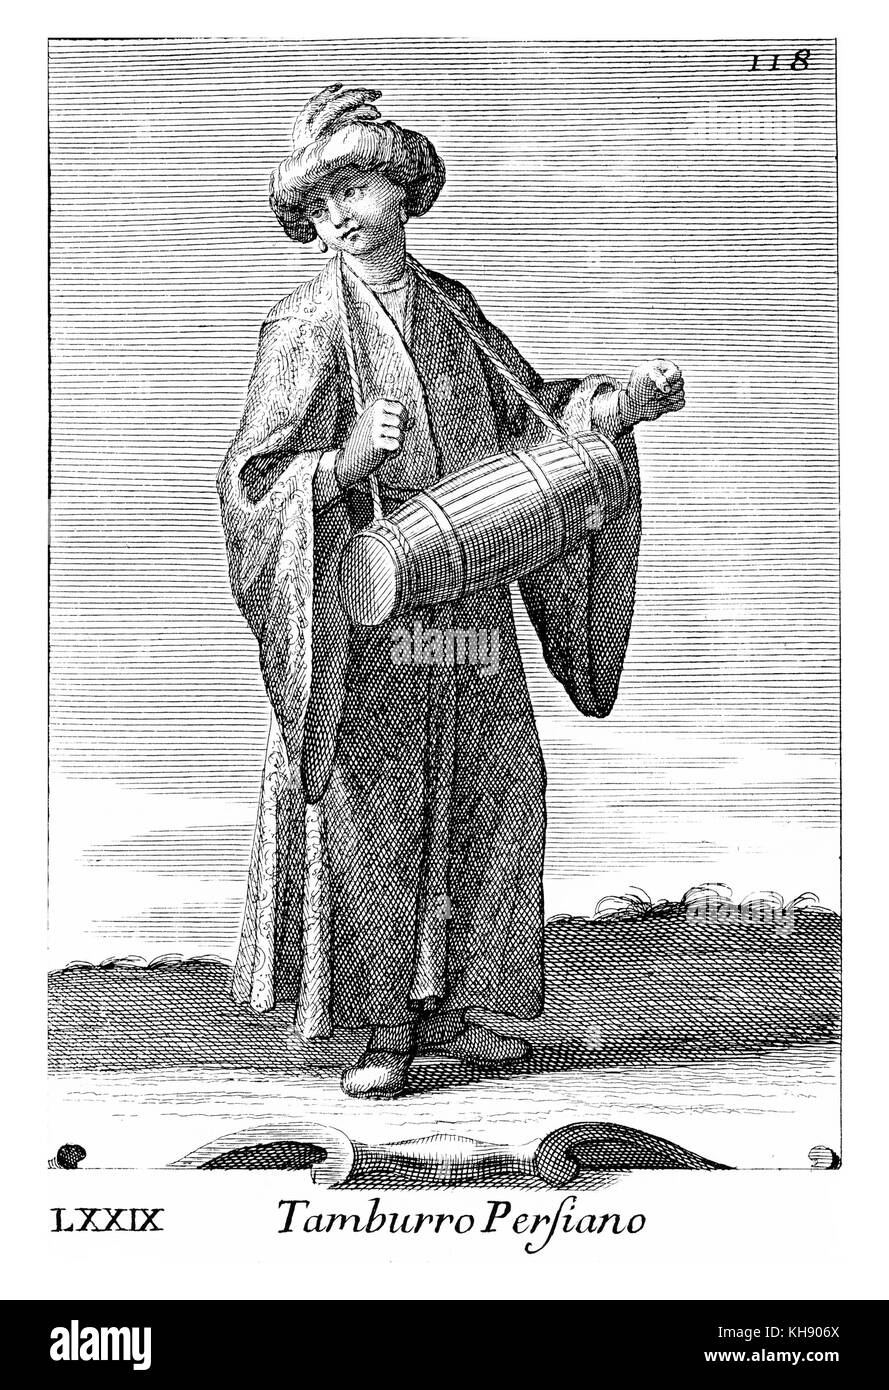 L'uomo la riproduzione di piccole dimensioni (Persiano) tamburo di canna, giocato con le mani. Illustrazione da Filippo Bonanni 'Gabinetto Armonico" pubblicato nel 1723, l'Illustrazione 79. Incisione di Arnold van Westerhout. La didascalia recita Tamburro Persiano. Foto Stock